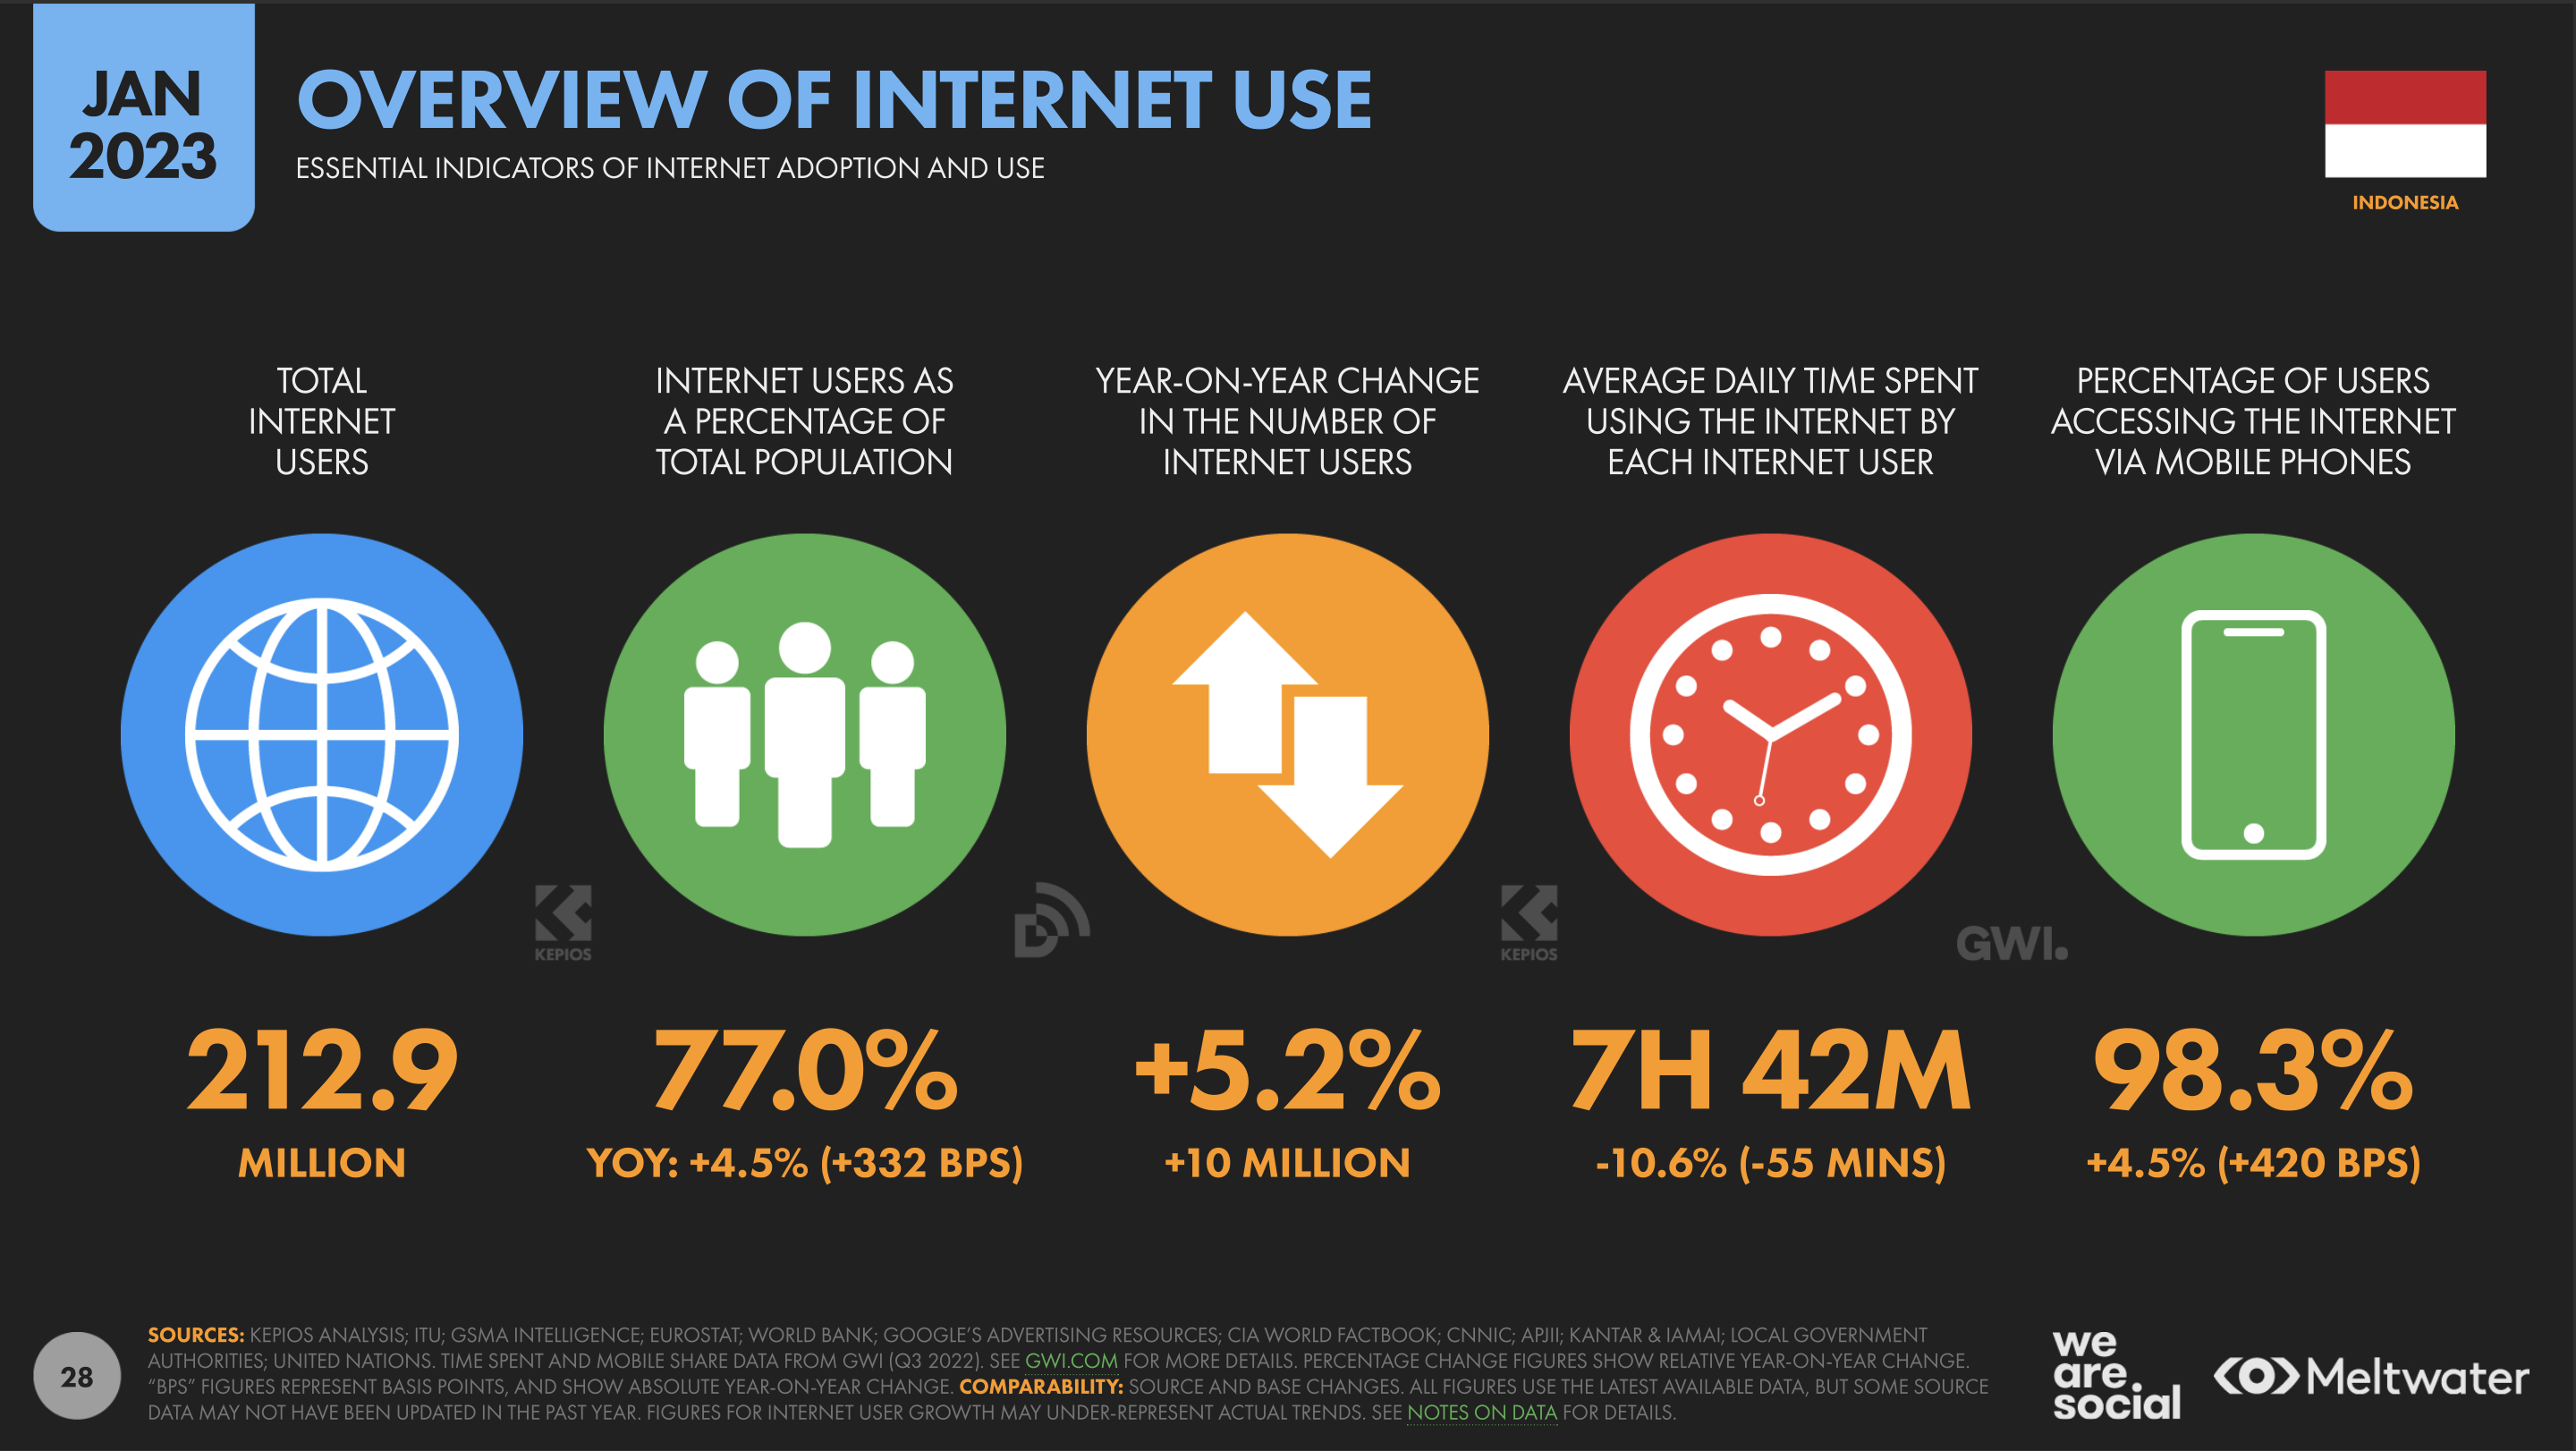 Foto tentang pengguna Internet di Indonesia tahun 2023, untuk menjelaskan apa yang dimaksud dengan digital marketing